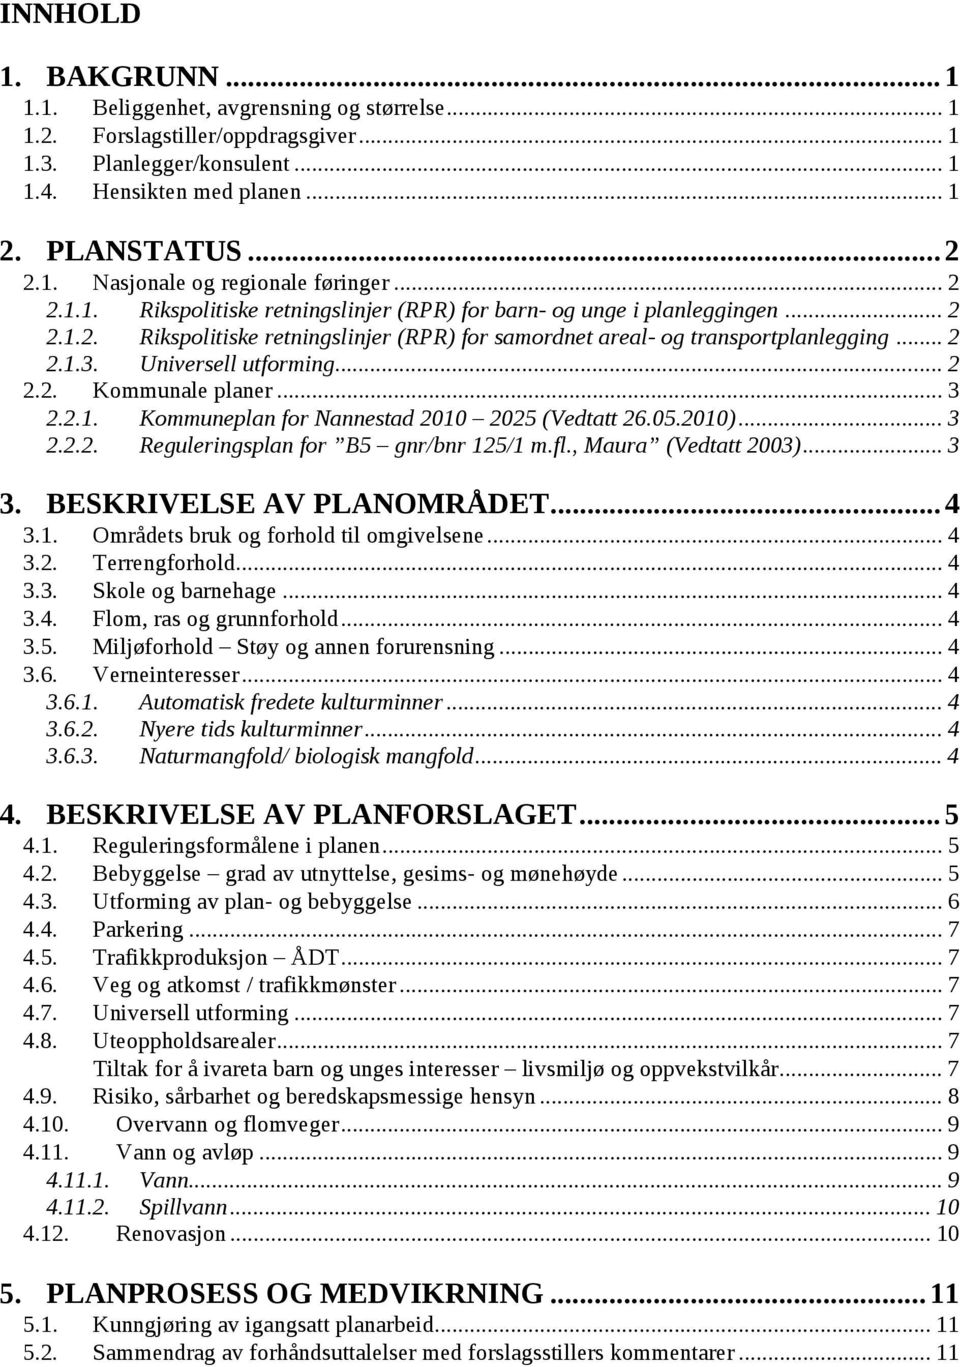 Universell utforming... 2 2.2. Kommunale planer... 3 2.2.1. Kommuneplan for Nannestad 2010 2025 (Vedtatt 26.05.2010)... 3 2.2.2. Reguleringsplan for B5 gnr/bnr 125/1 m.fl., Maura (Vedtatt 2003)... 3 3.